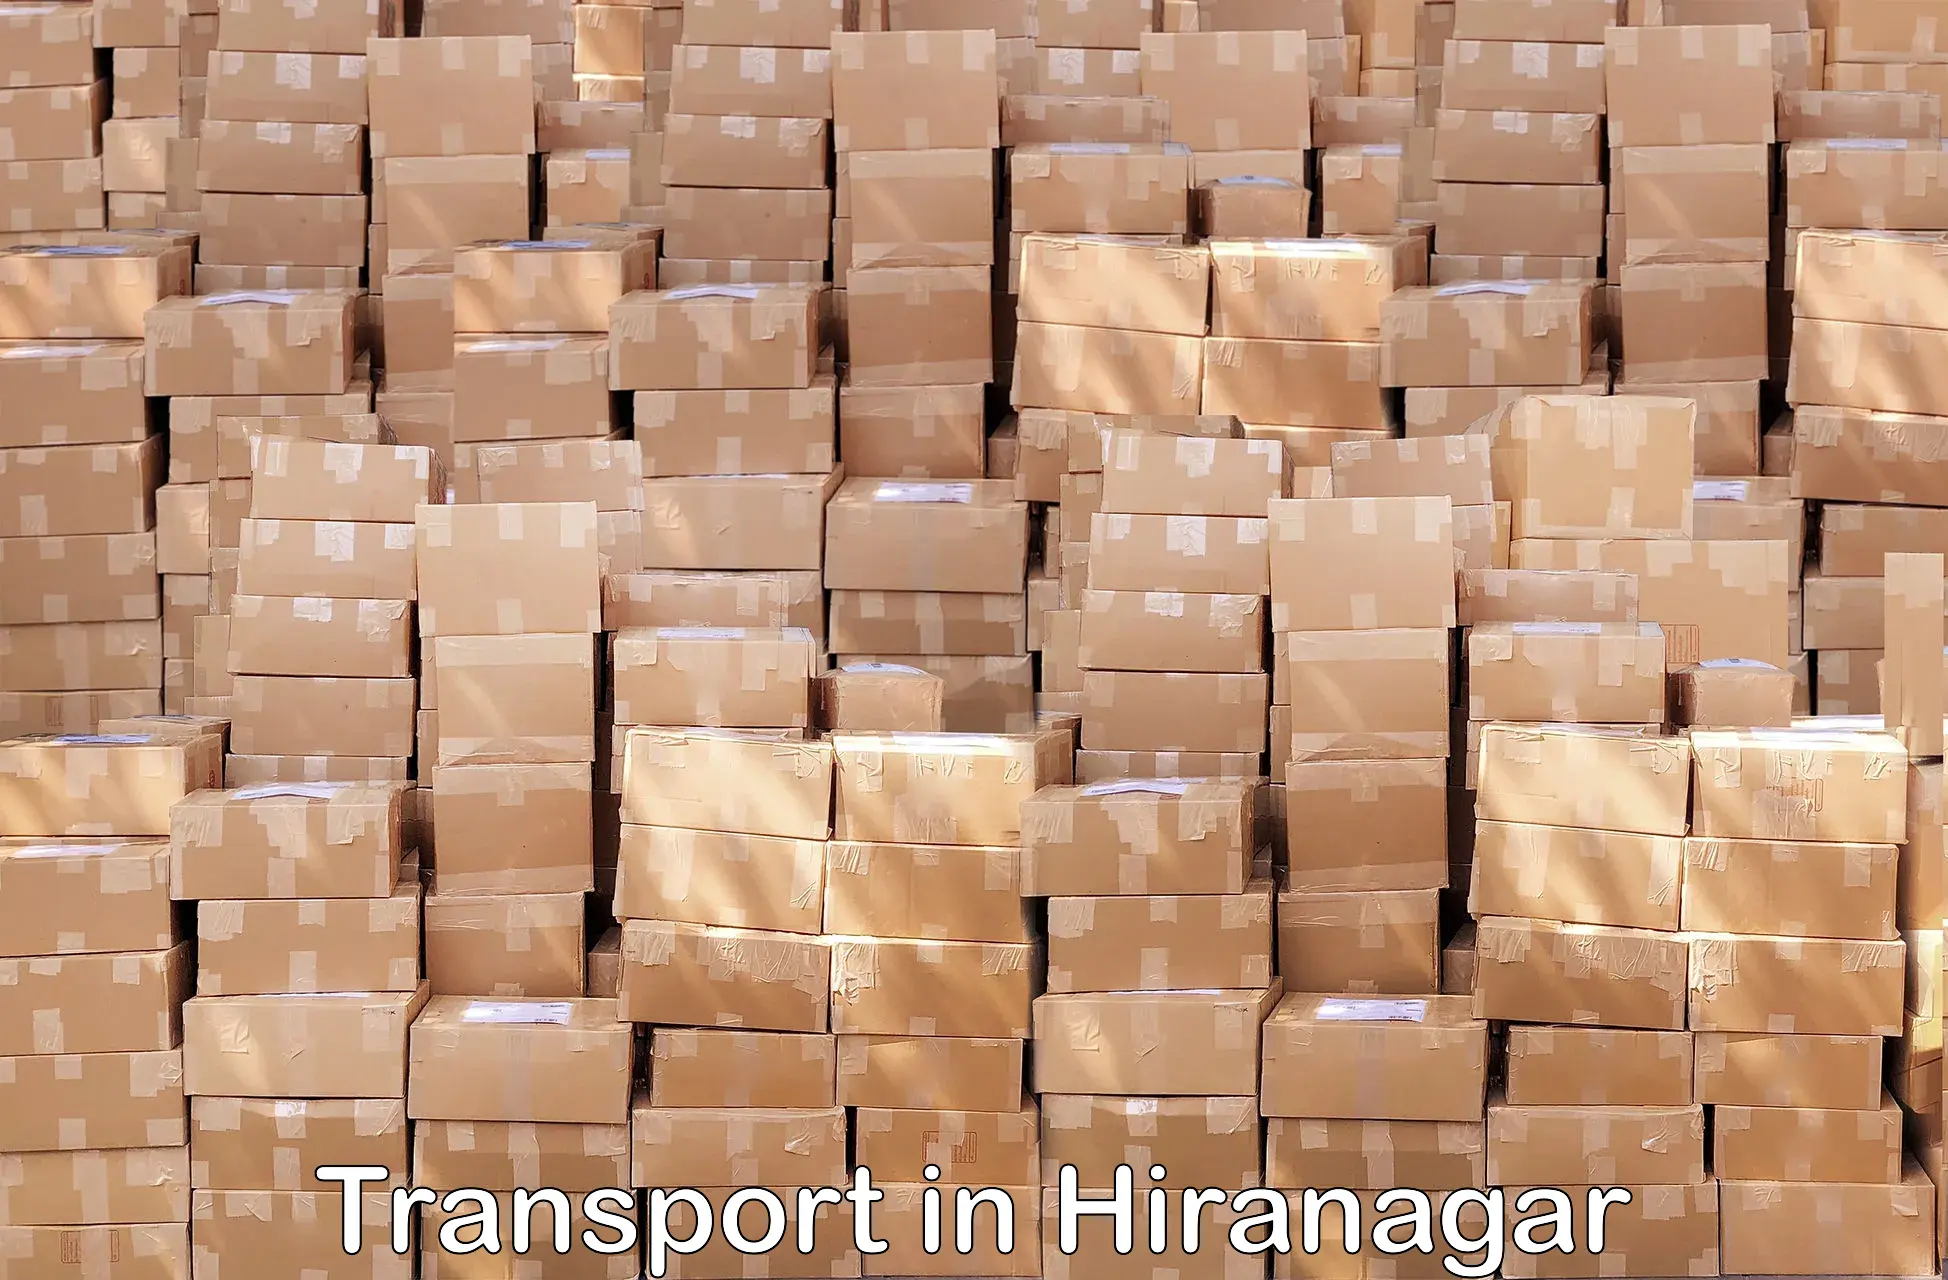 Intercity transport in Hiranagar